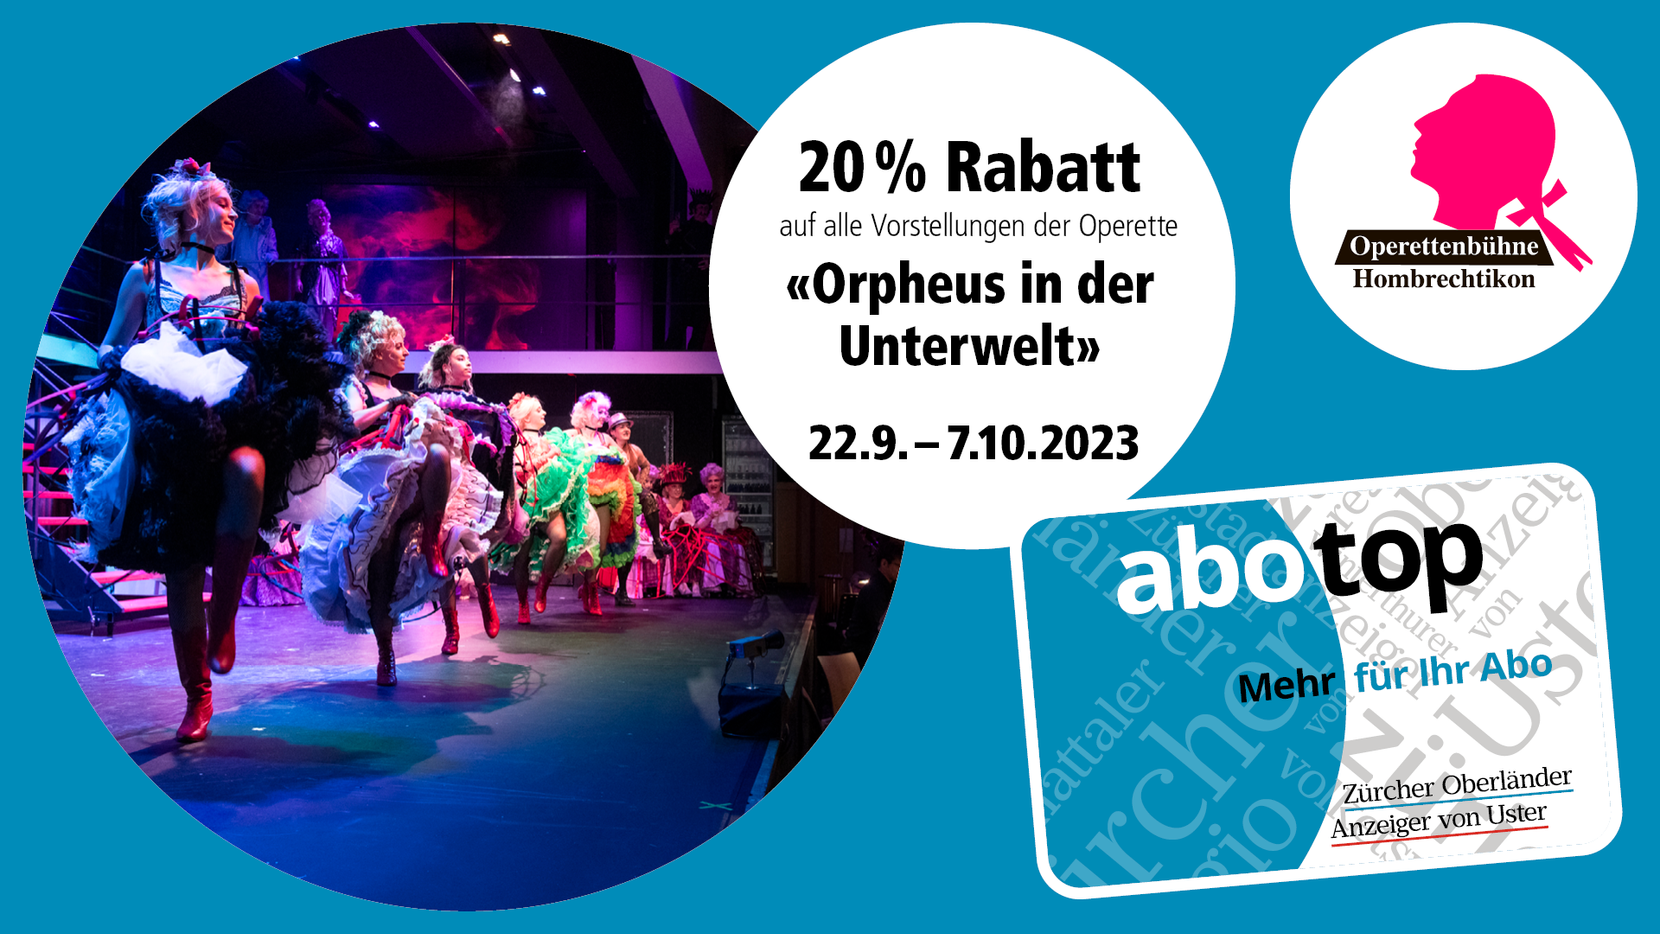 Abotop-Aktion September 2023 «Orpheus in der Unterwelt».